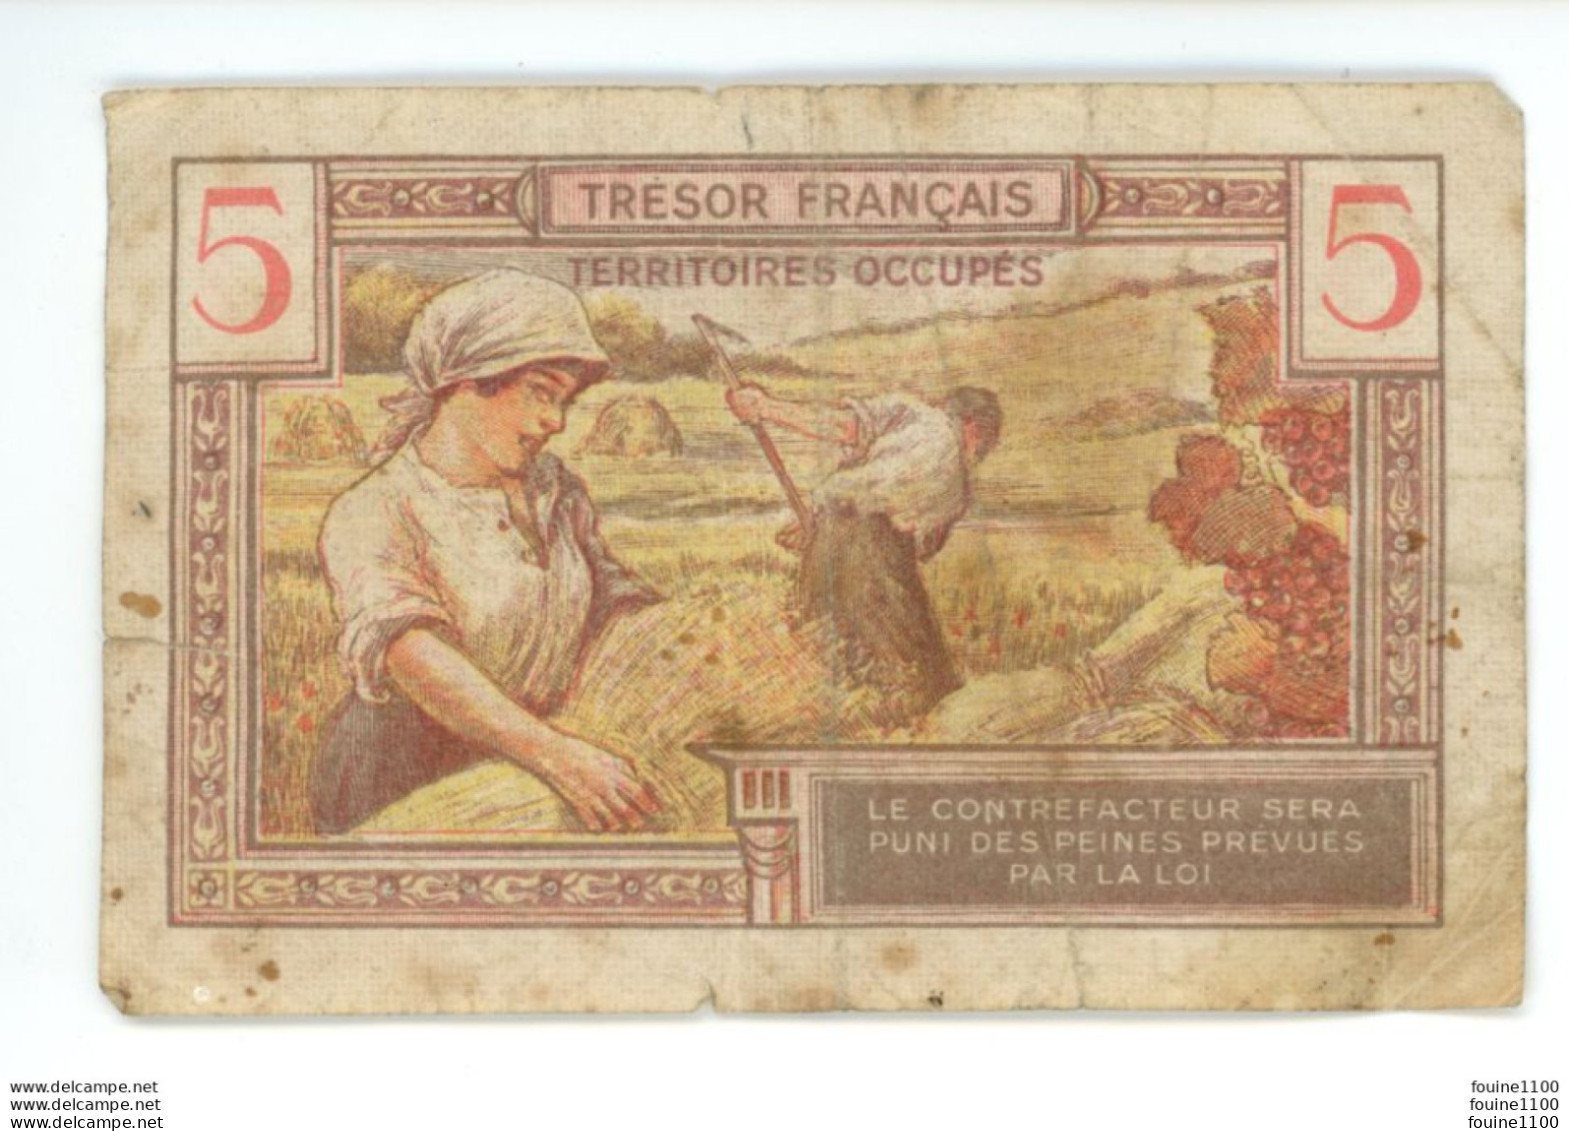 Billet , FRANCE , 5 Francs , Cinq , TRESOR FRANCAIS , Territoires Occupés - 1947 Tesoro Francese